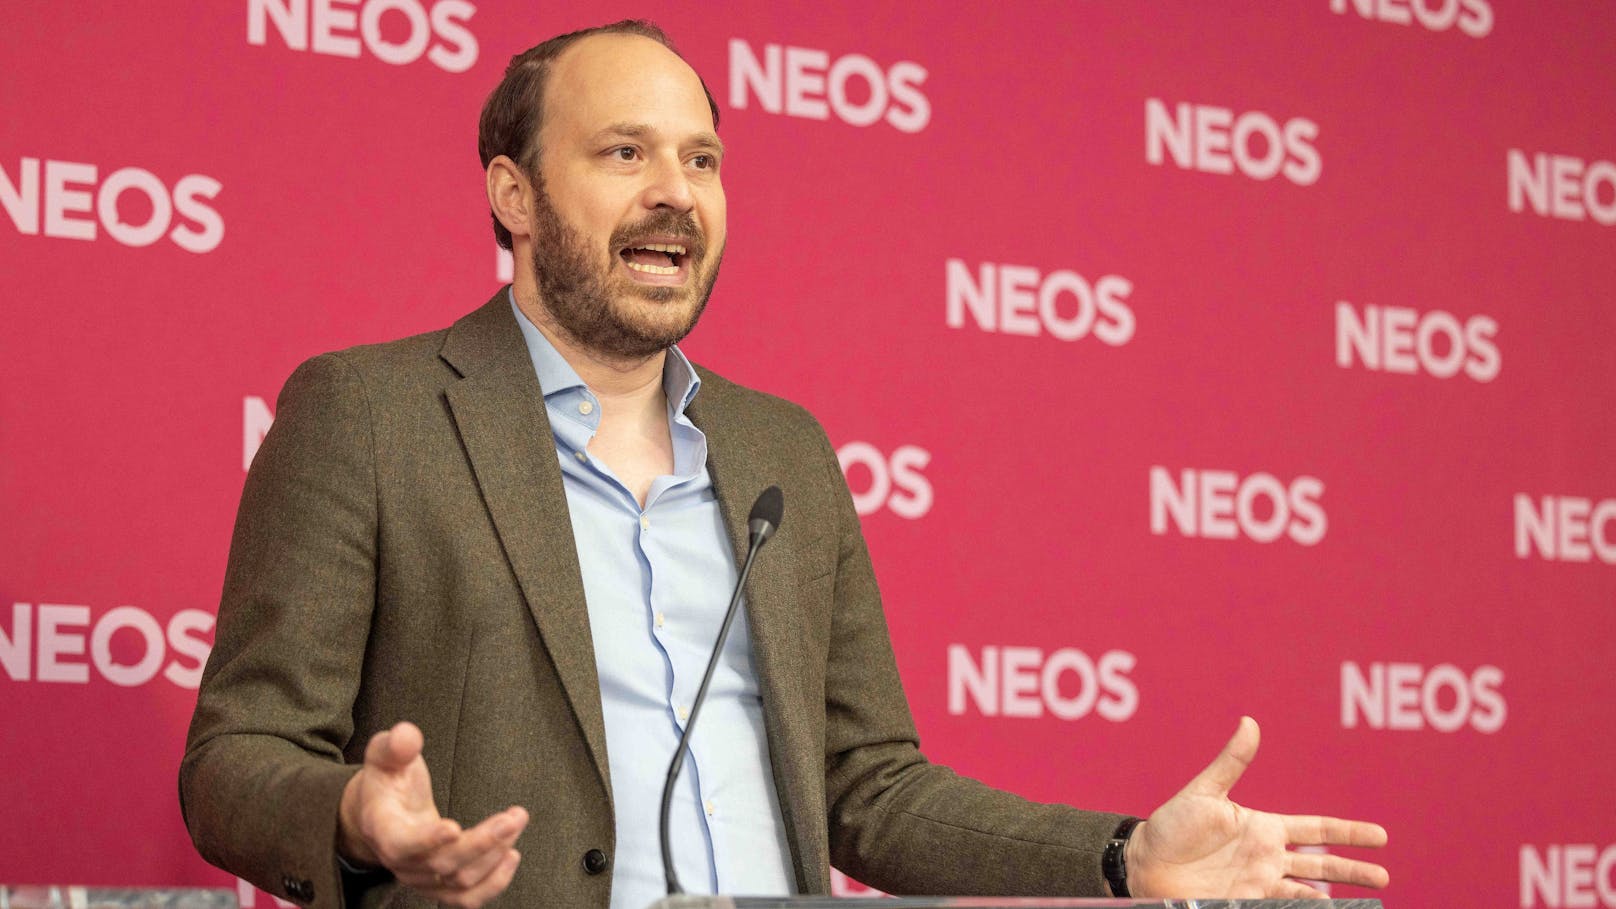 4,1 Milliarden €: NEOS warnt vor Wahlzuckerln